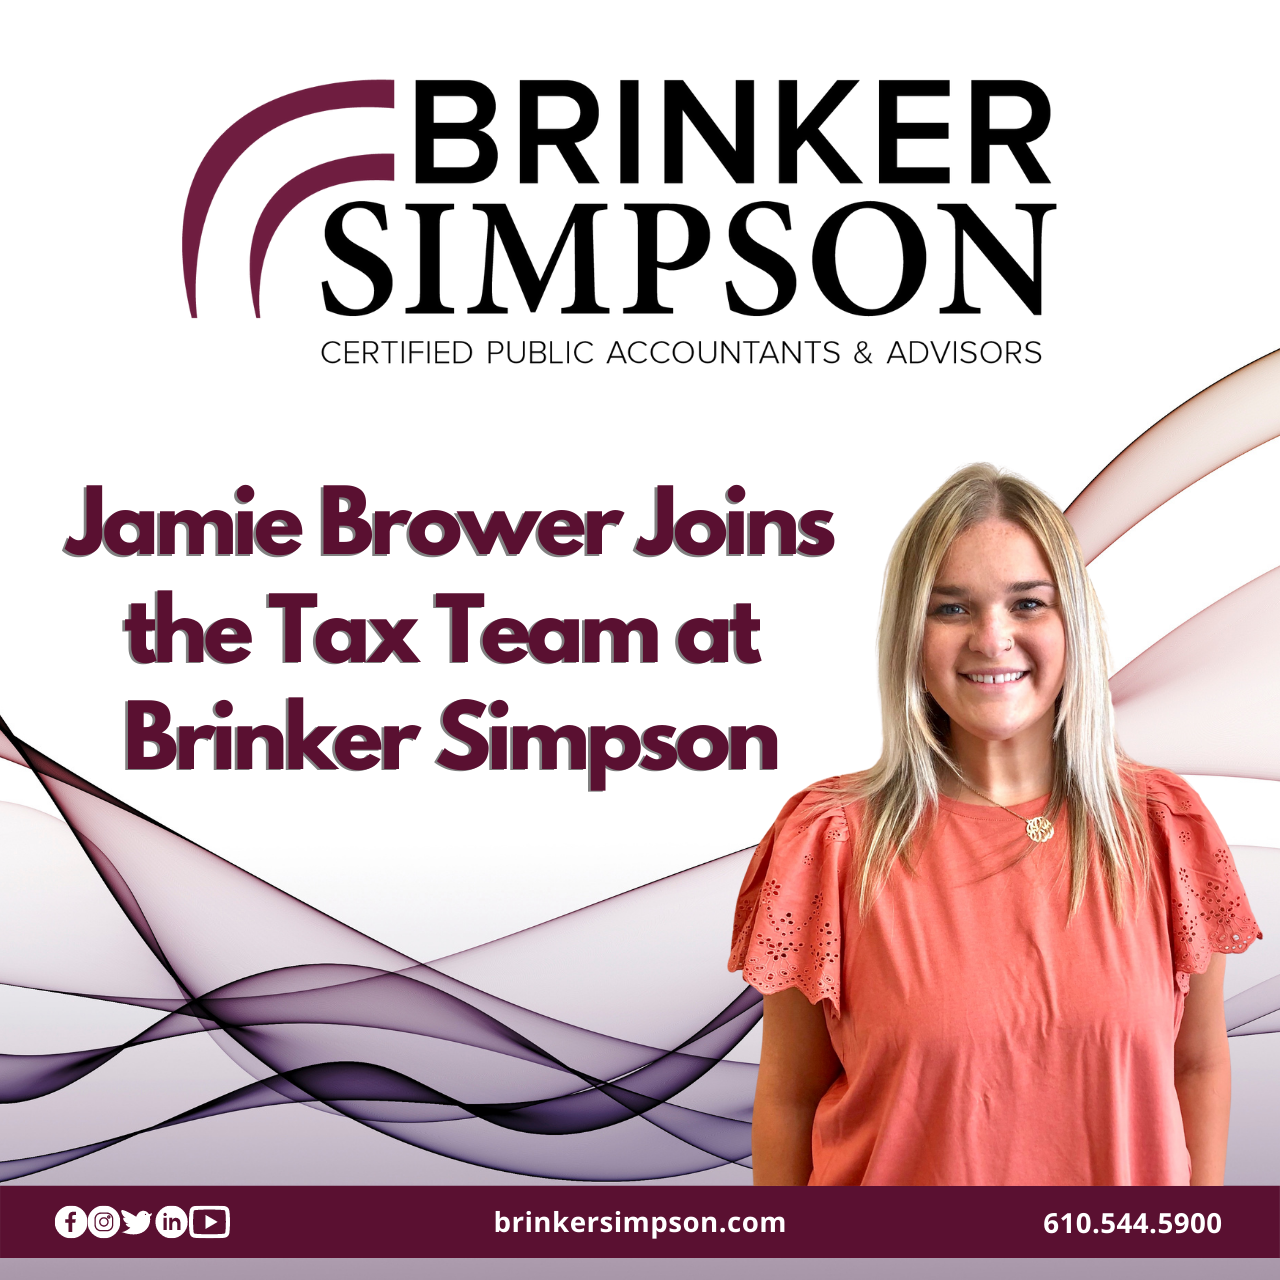 Jamie Brower Joins the Brinker Simpson Tax Team